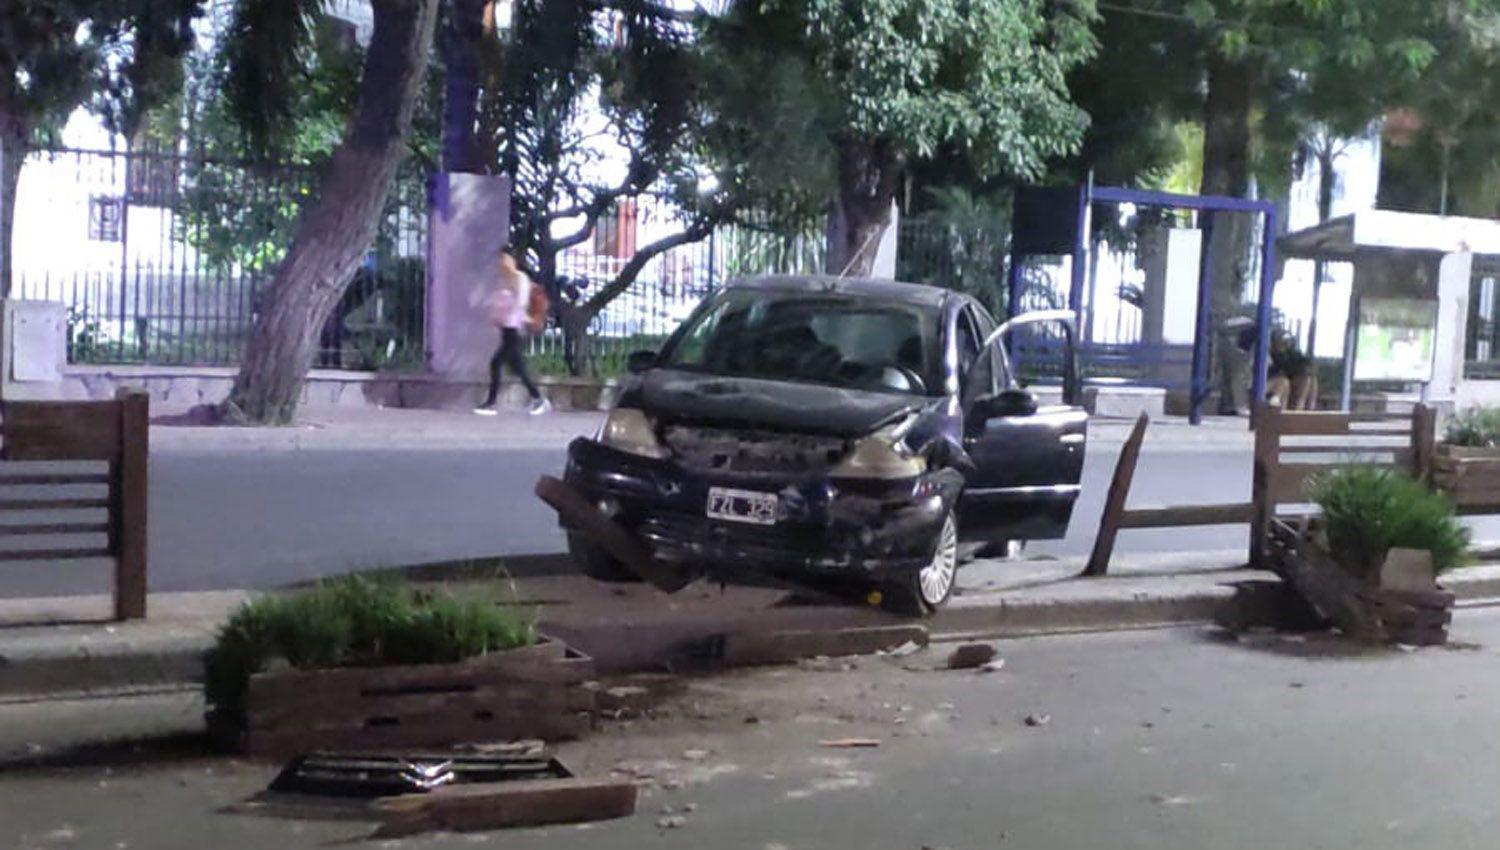 Perdioacute el control de su auto en plena avenida Belgrano y terminoacute lesionado